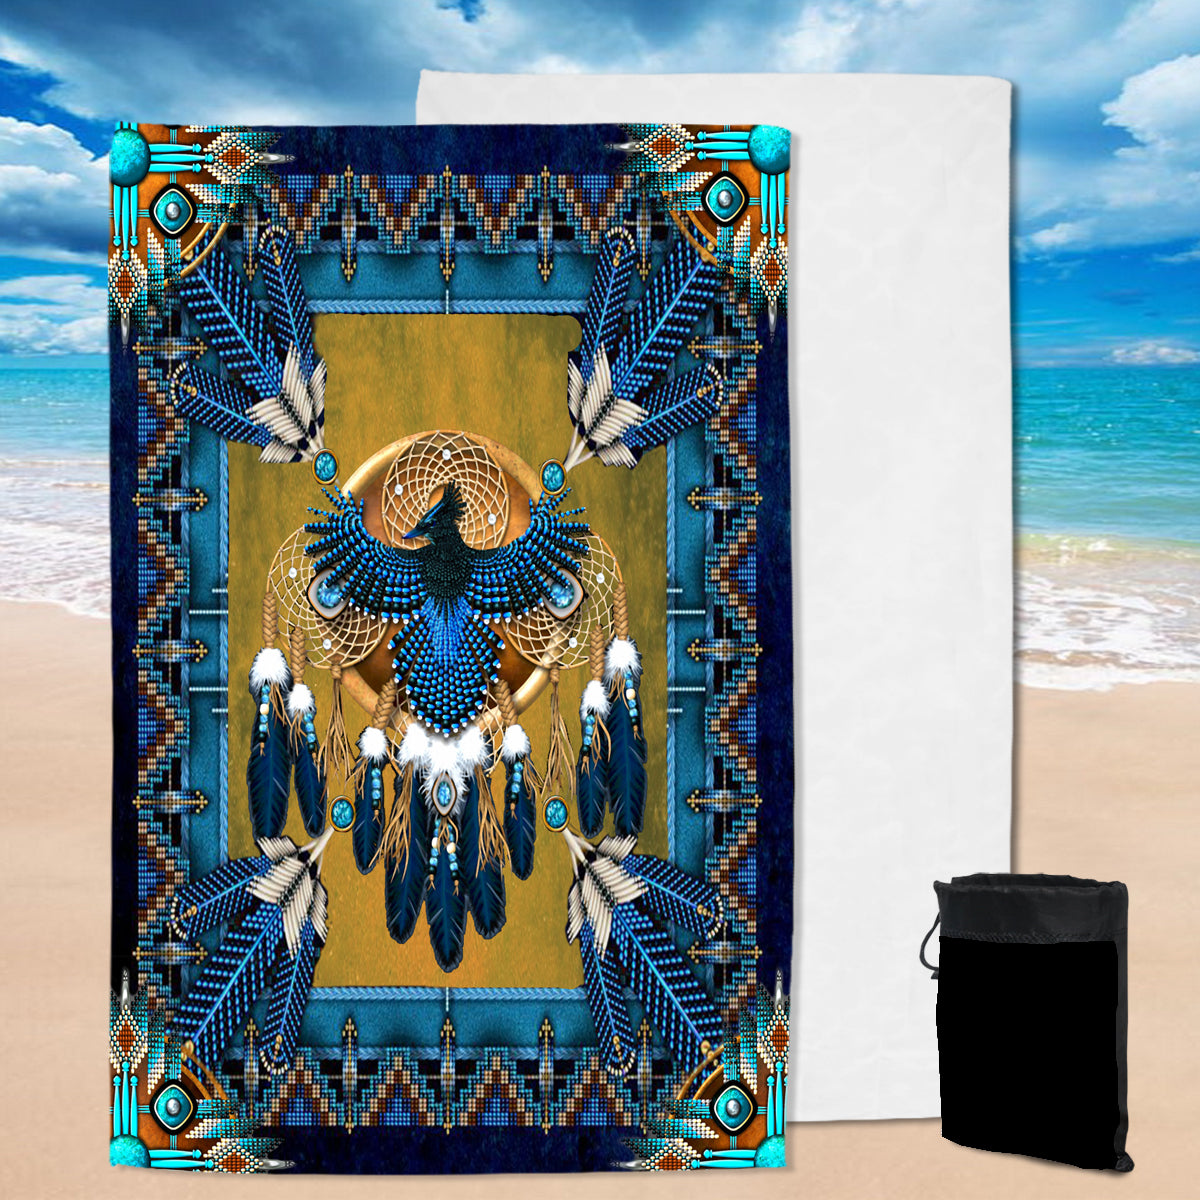 Powwow StorePBT0020 ThunderBird Mandala Blue  Pool Beach Towel